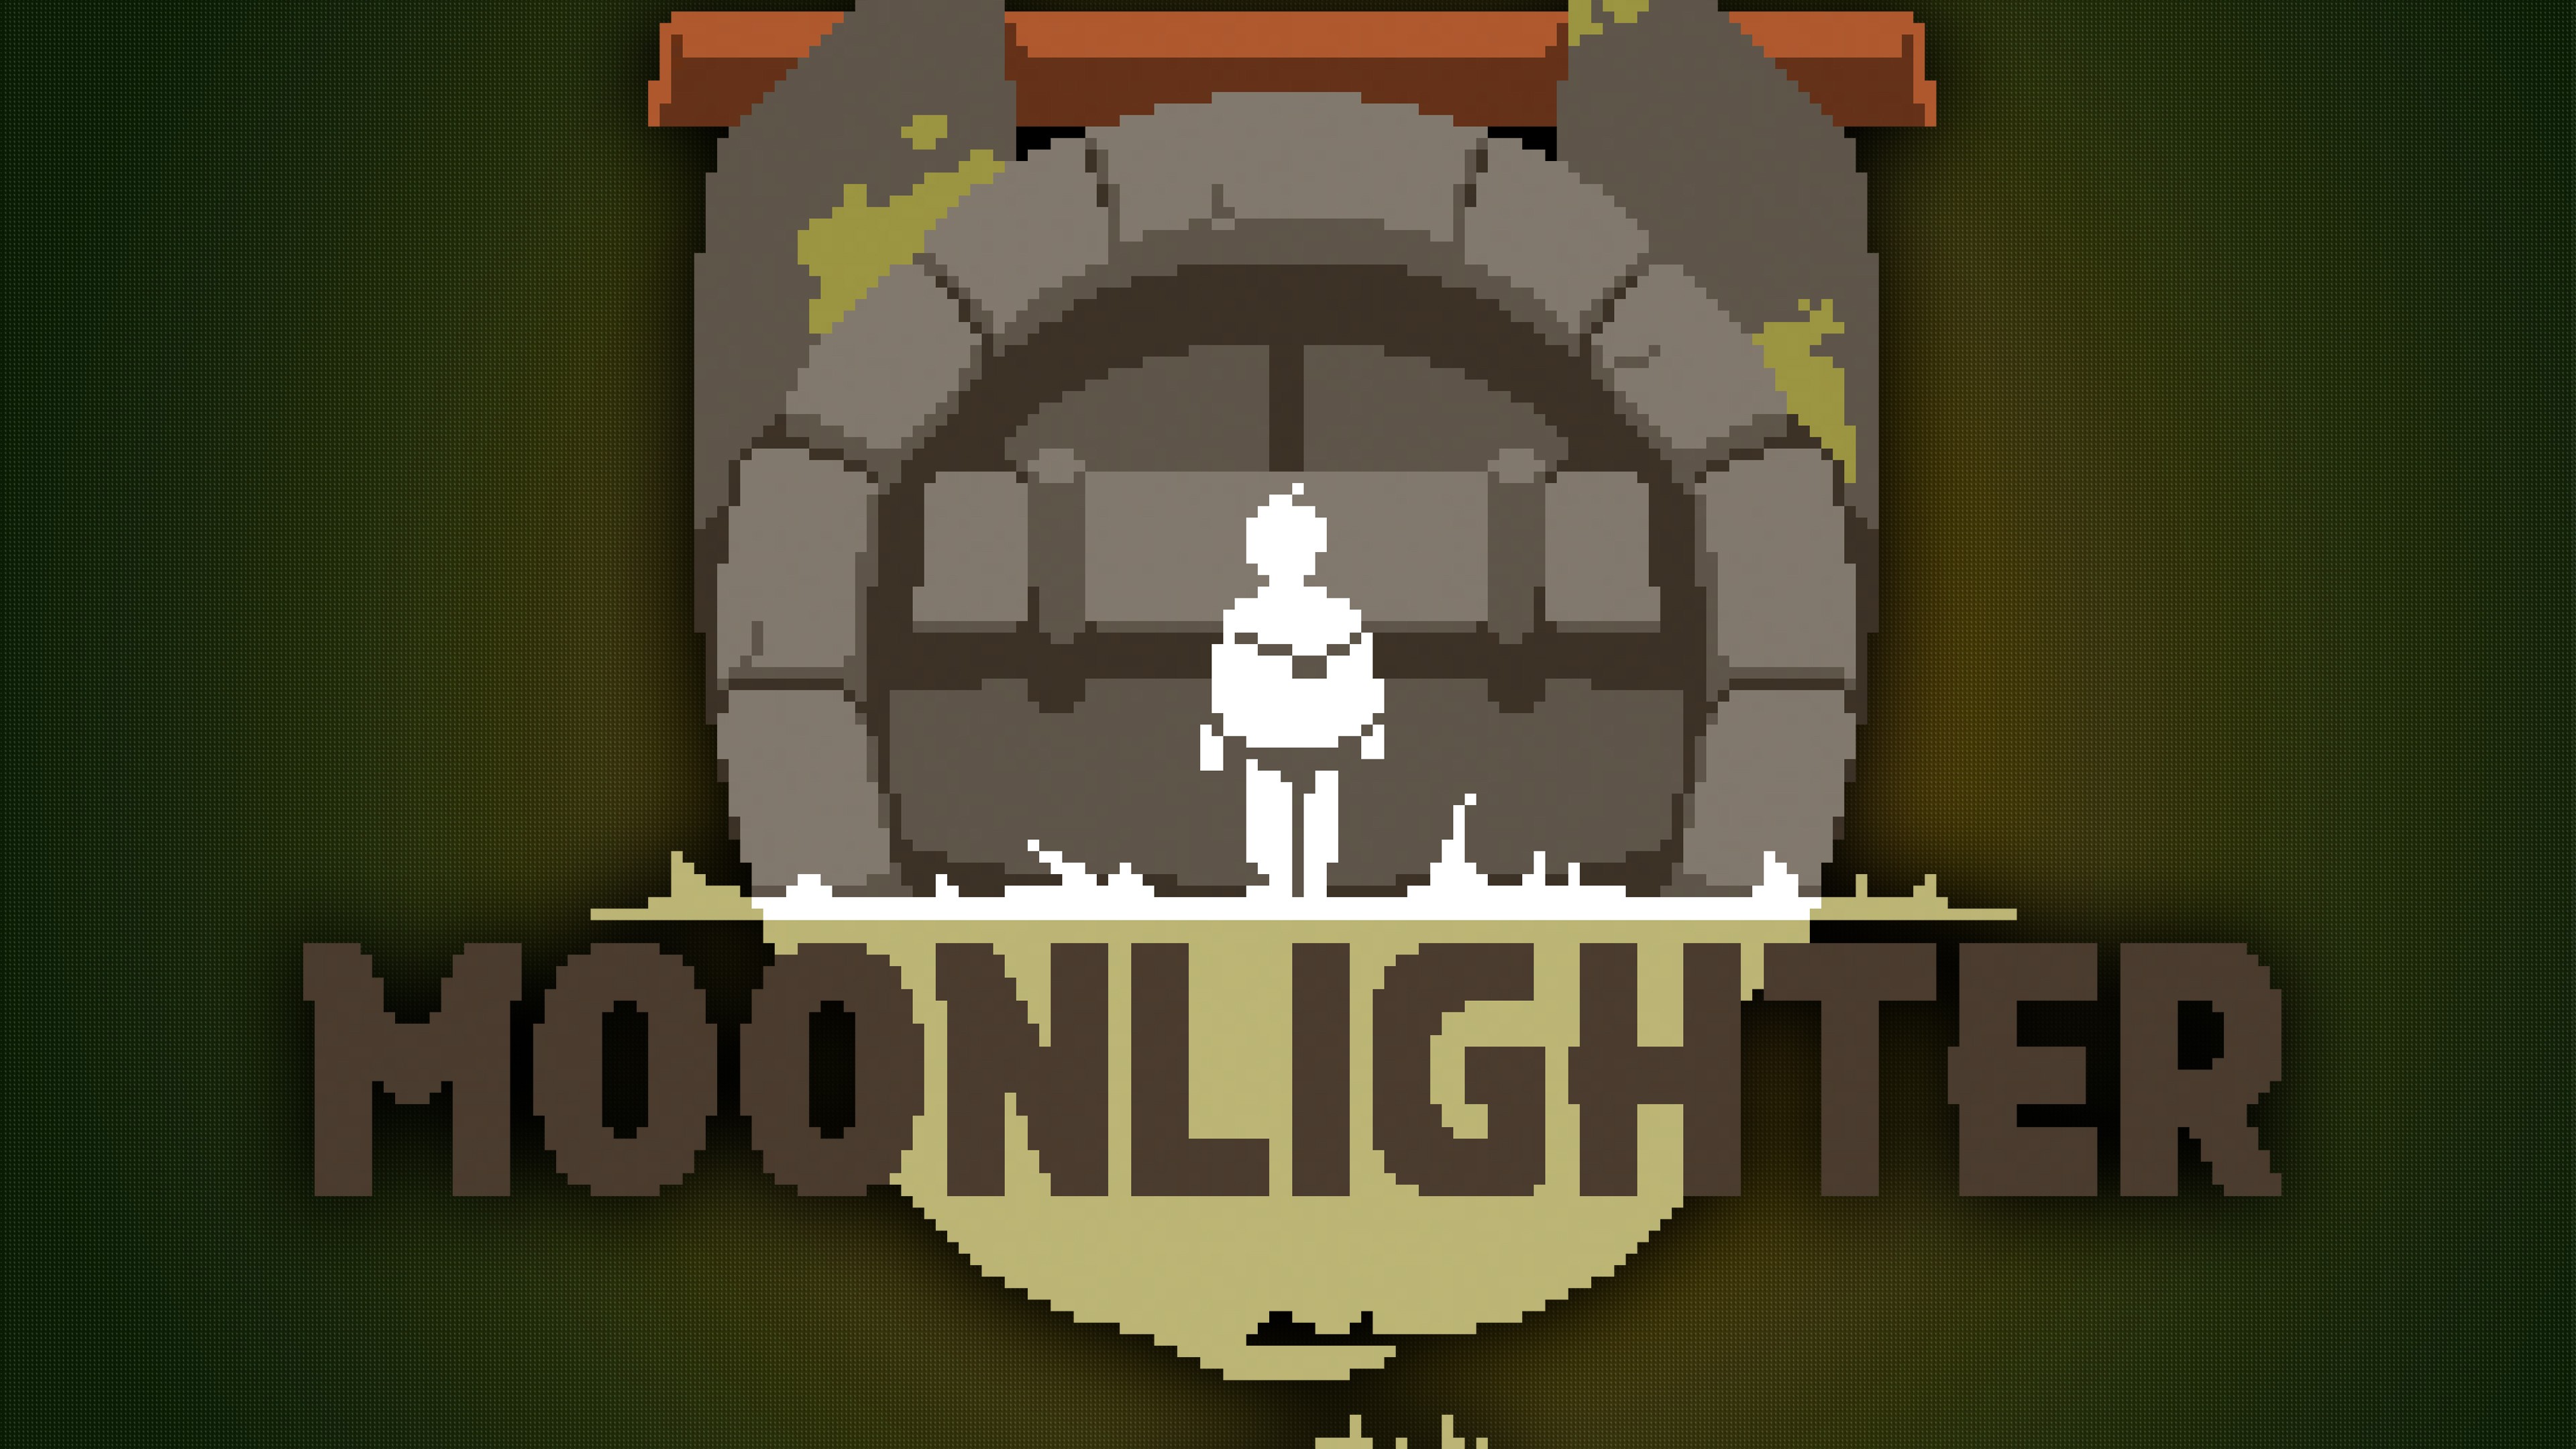 moonlighter shop download